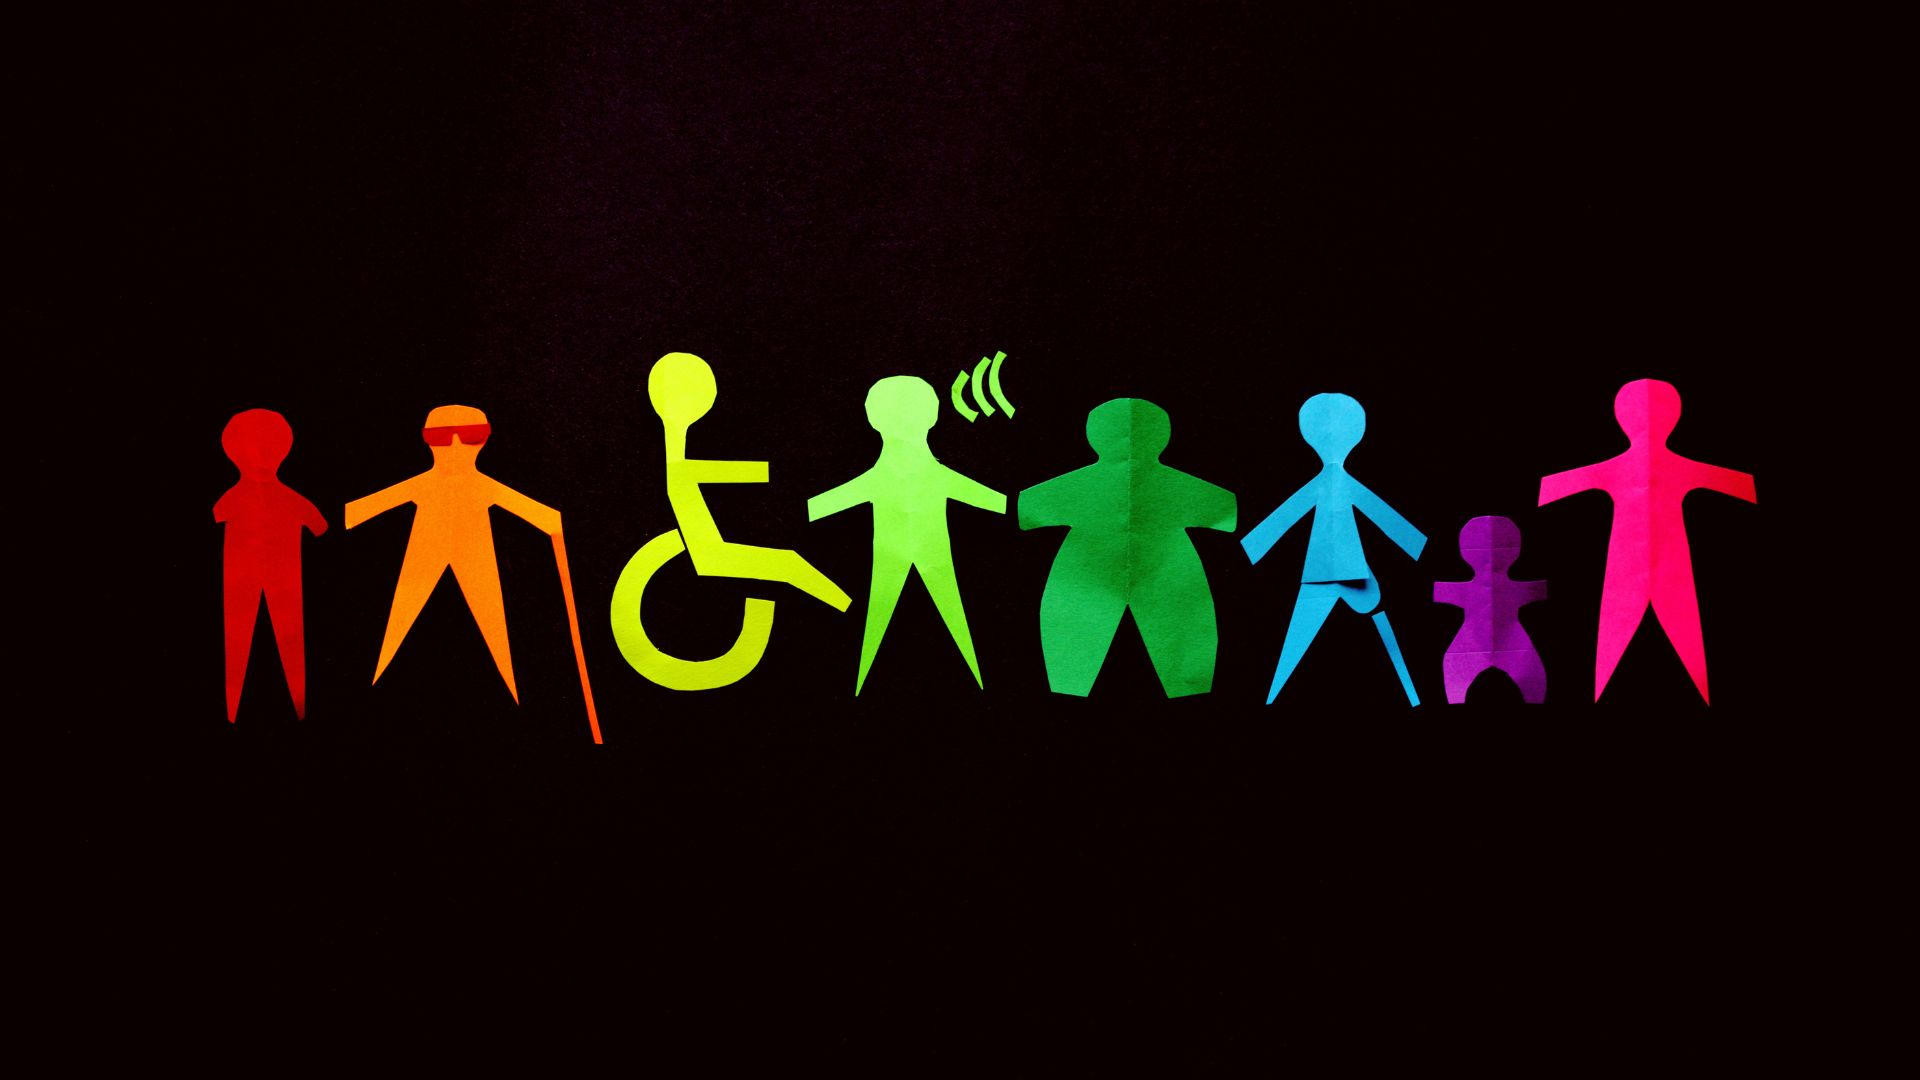 Immagini di omini stilizzati con disabilità differenti, con colori diversi su sfondo nero